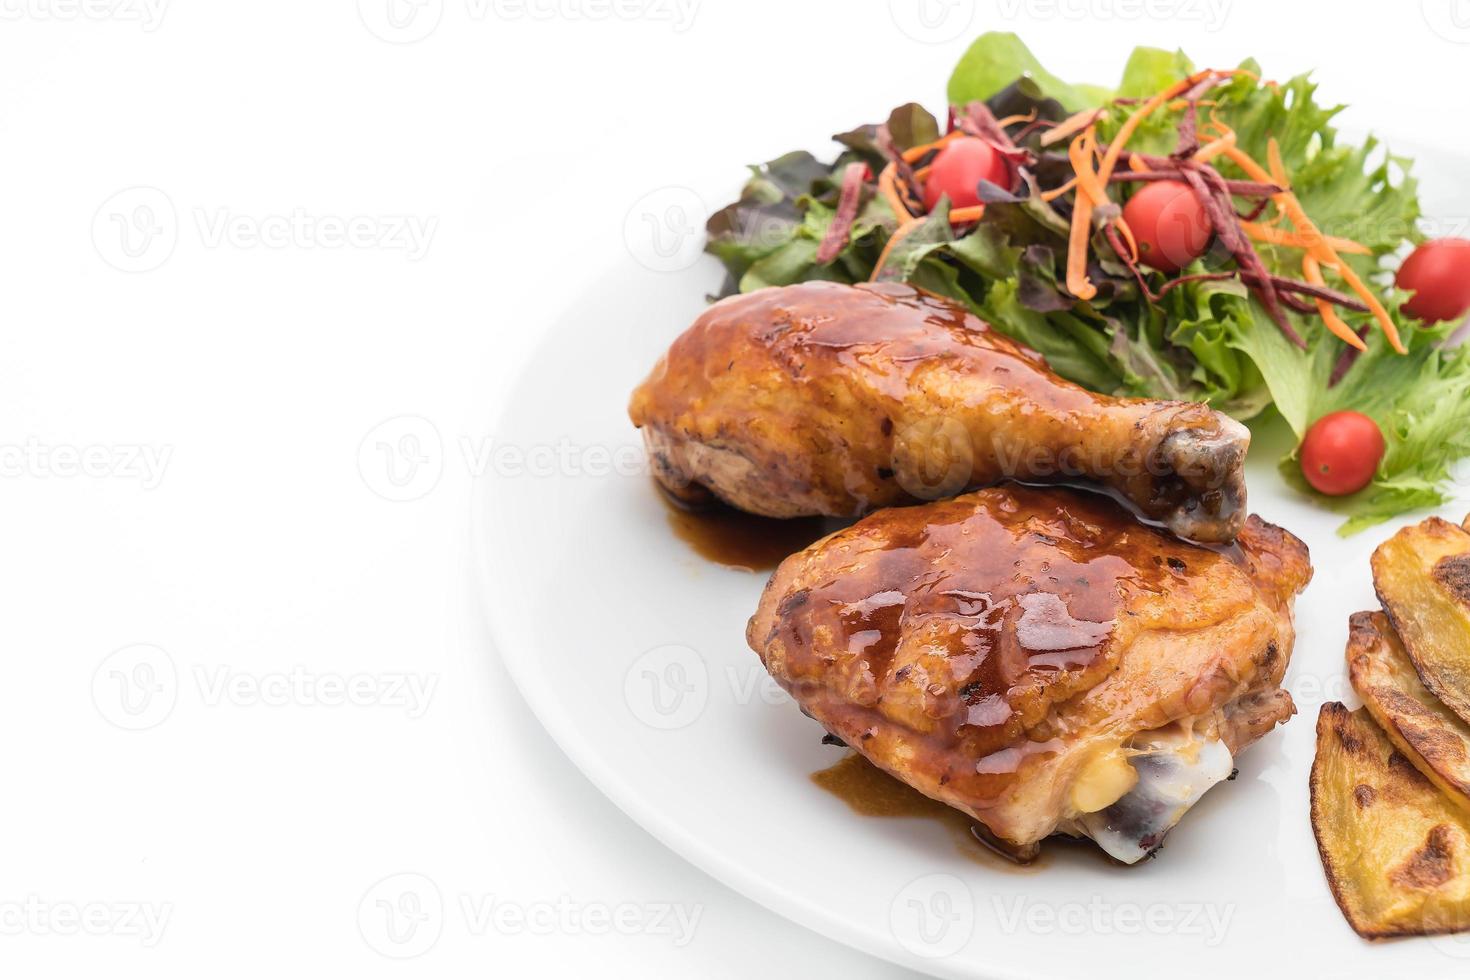 grillad kycklingbiff med teriyakisås på matbordet foto